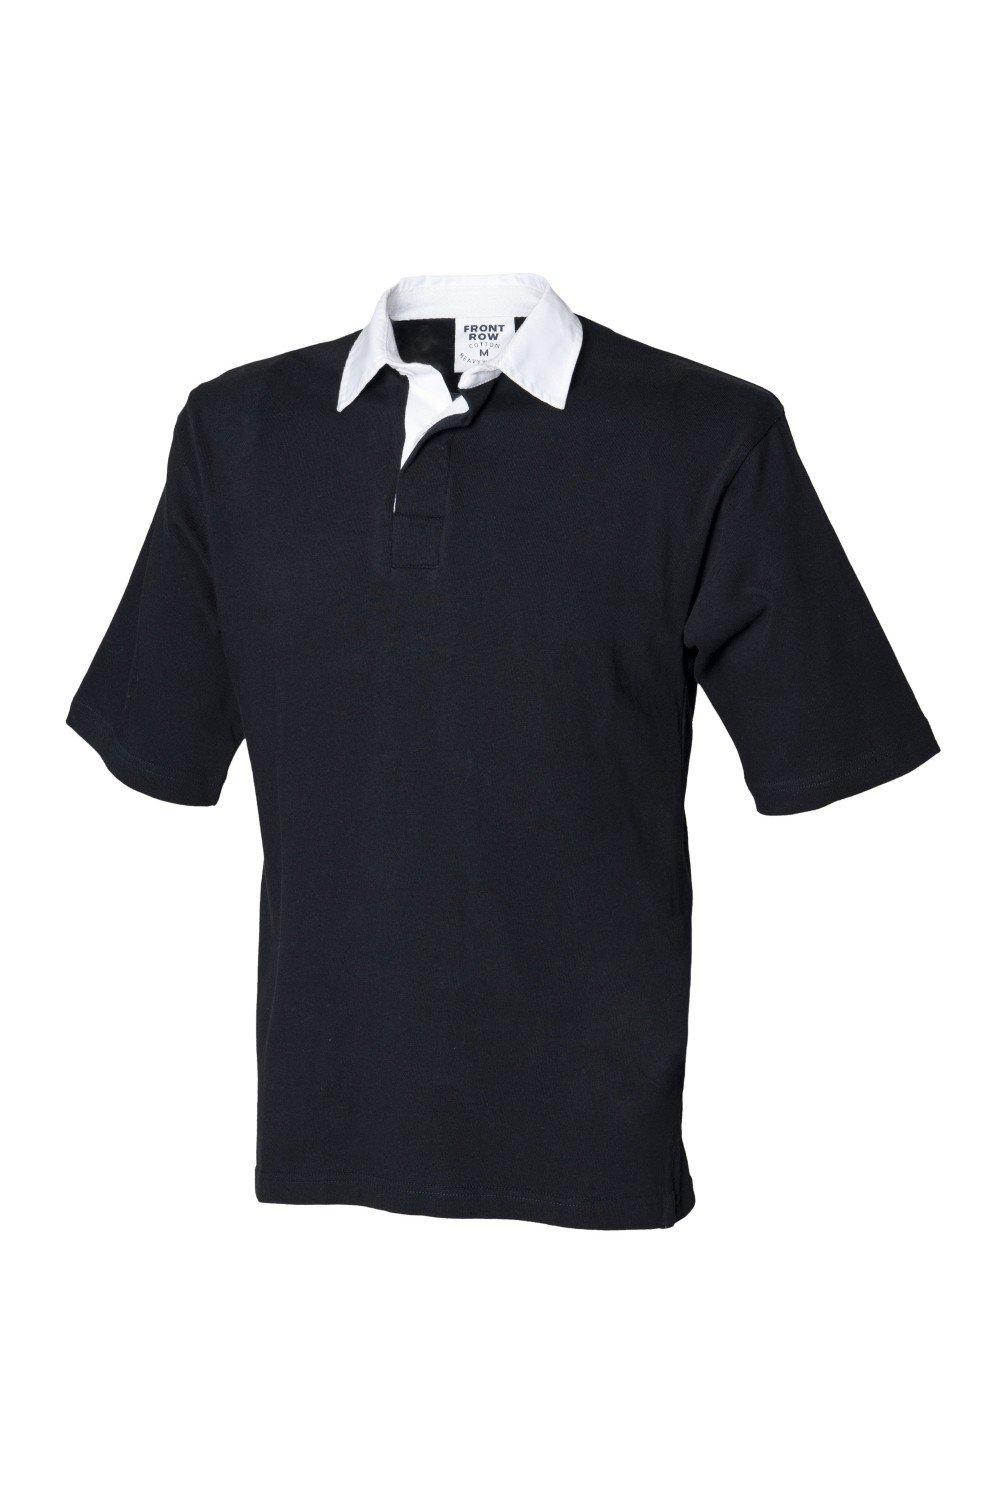 Спортивная рубашка-поло для регби с короткими рукавами Front Row, черный